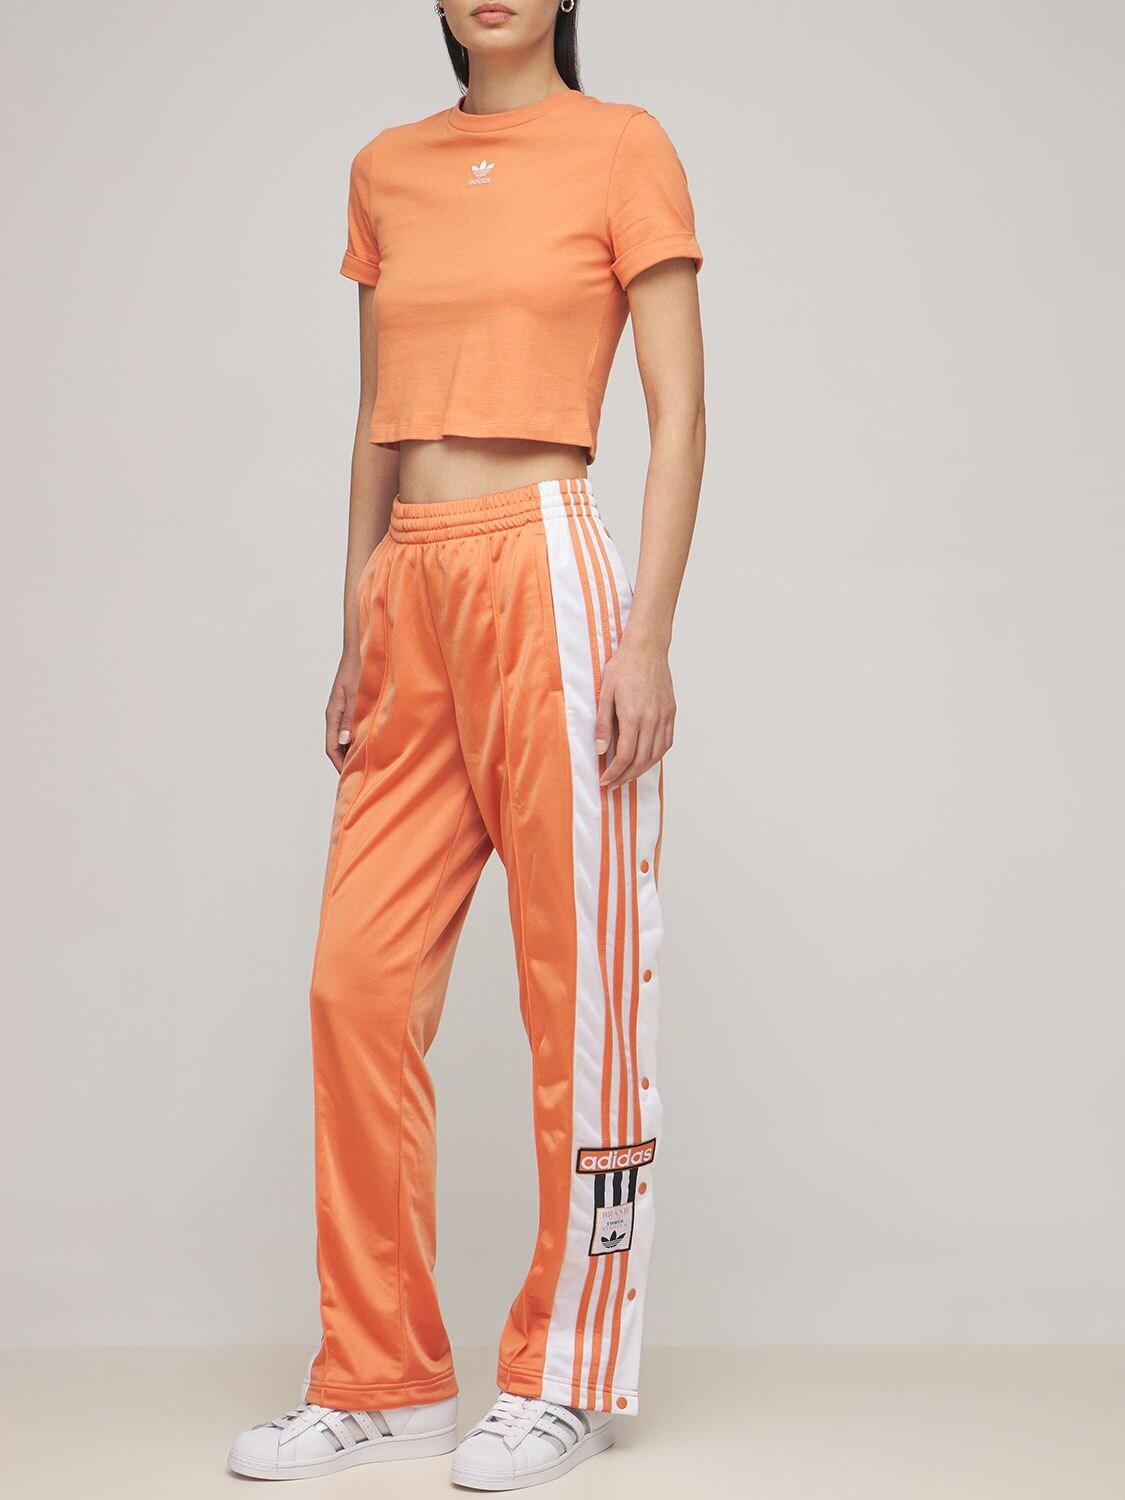 adidas Originals Adibreak Tp Pants in Orange | Lyst